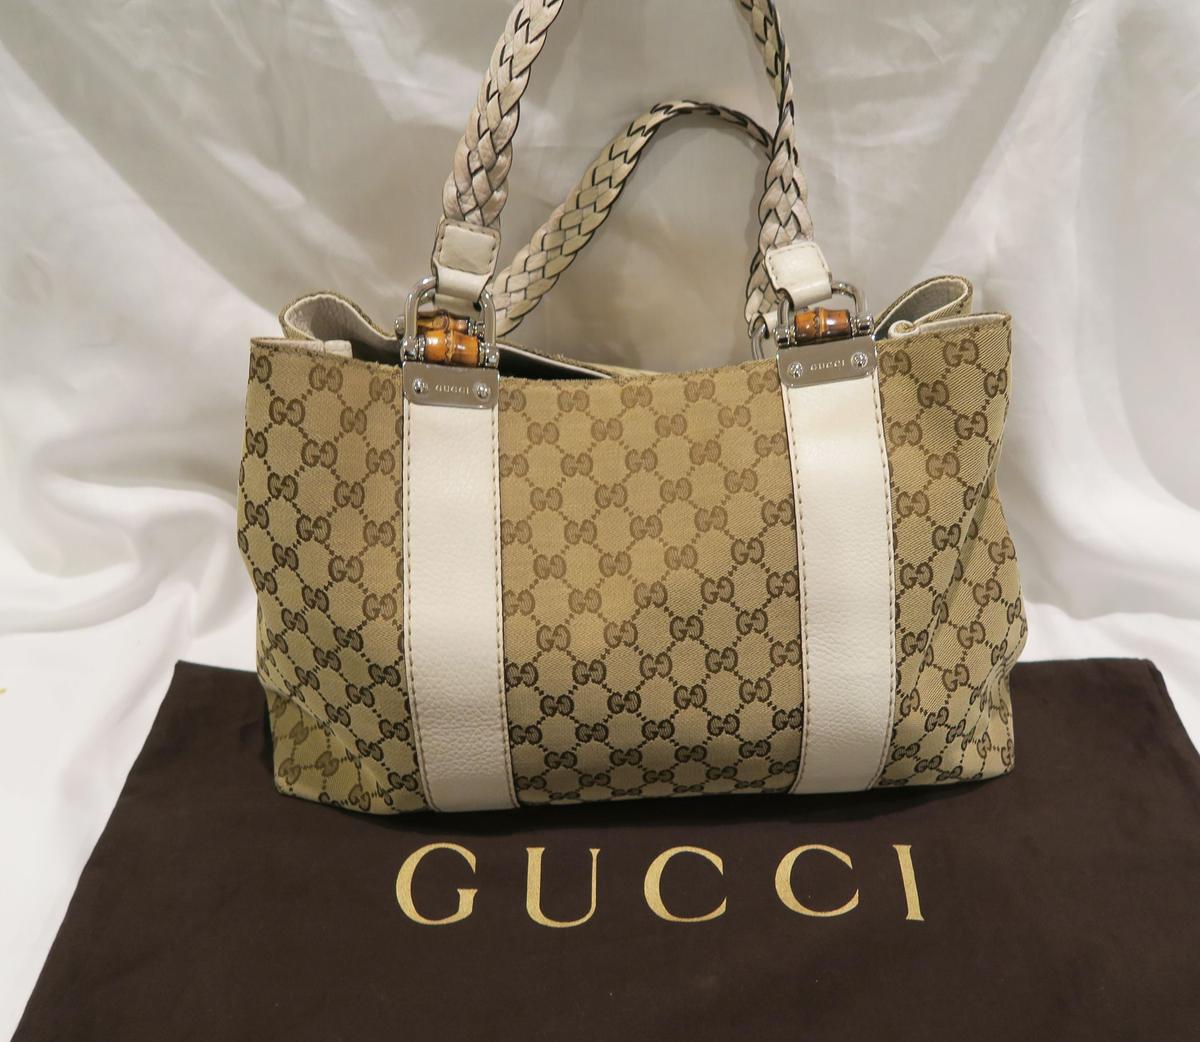 Gucci Signature Print Handbag w/White Leather Strap Style 19622564